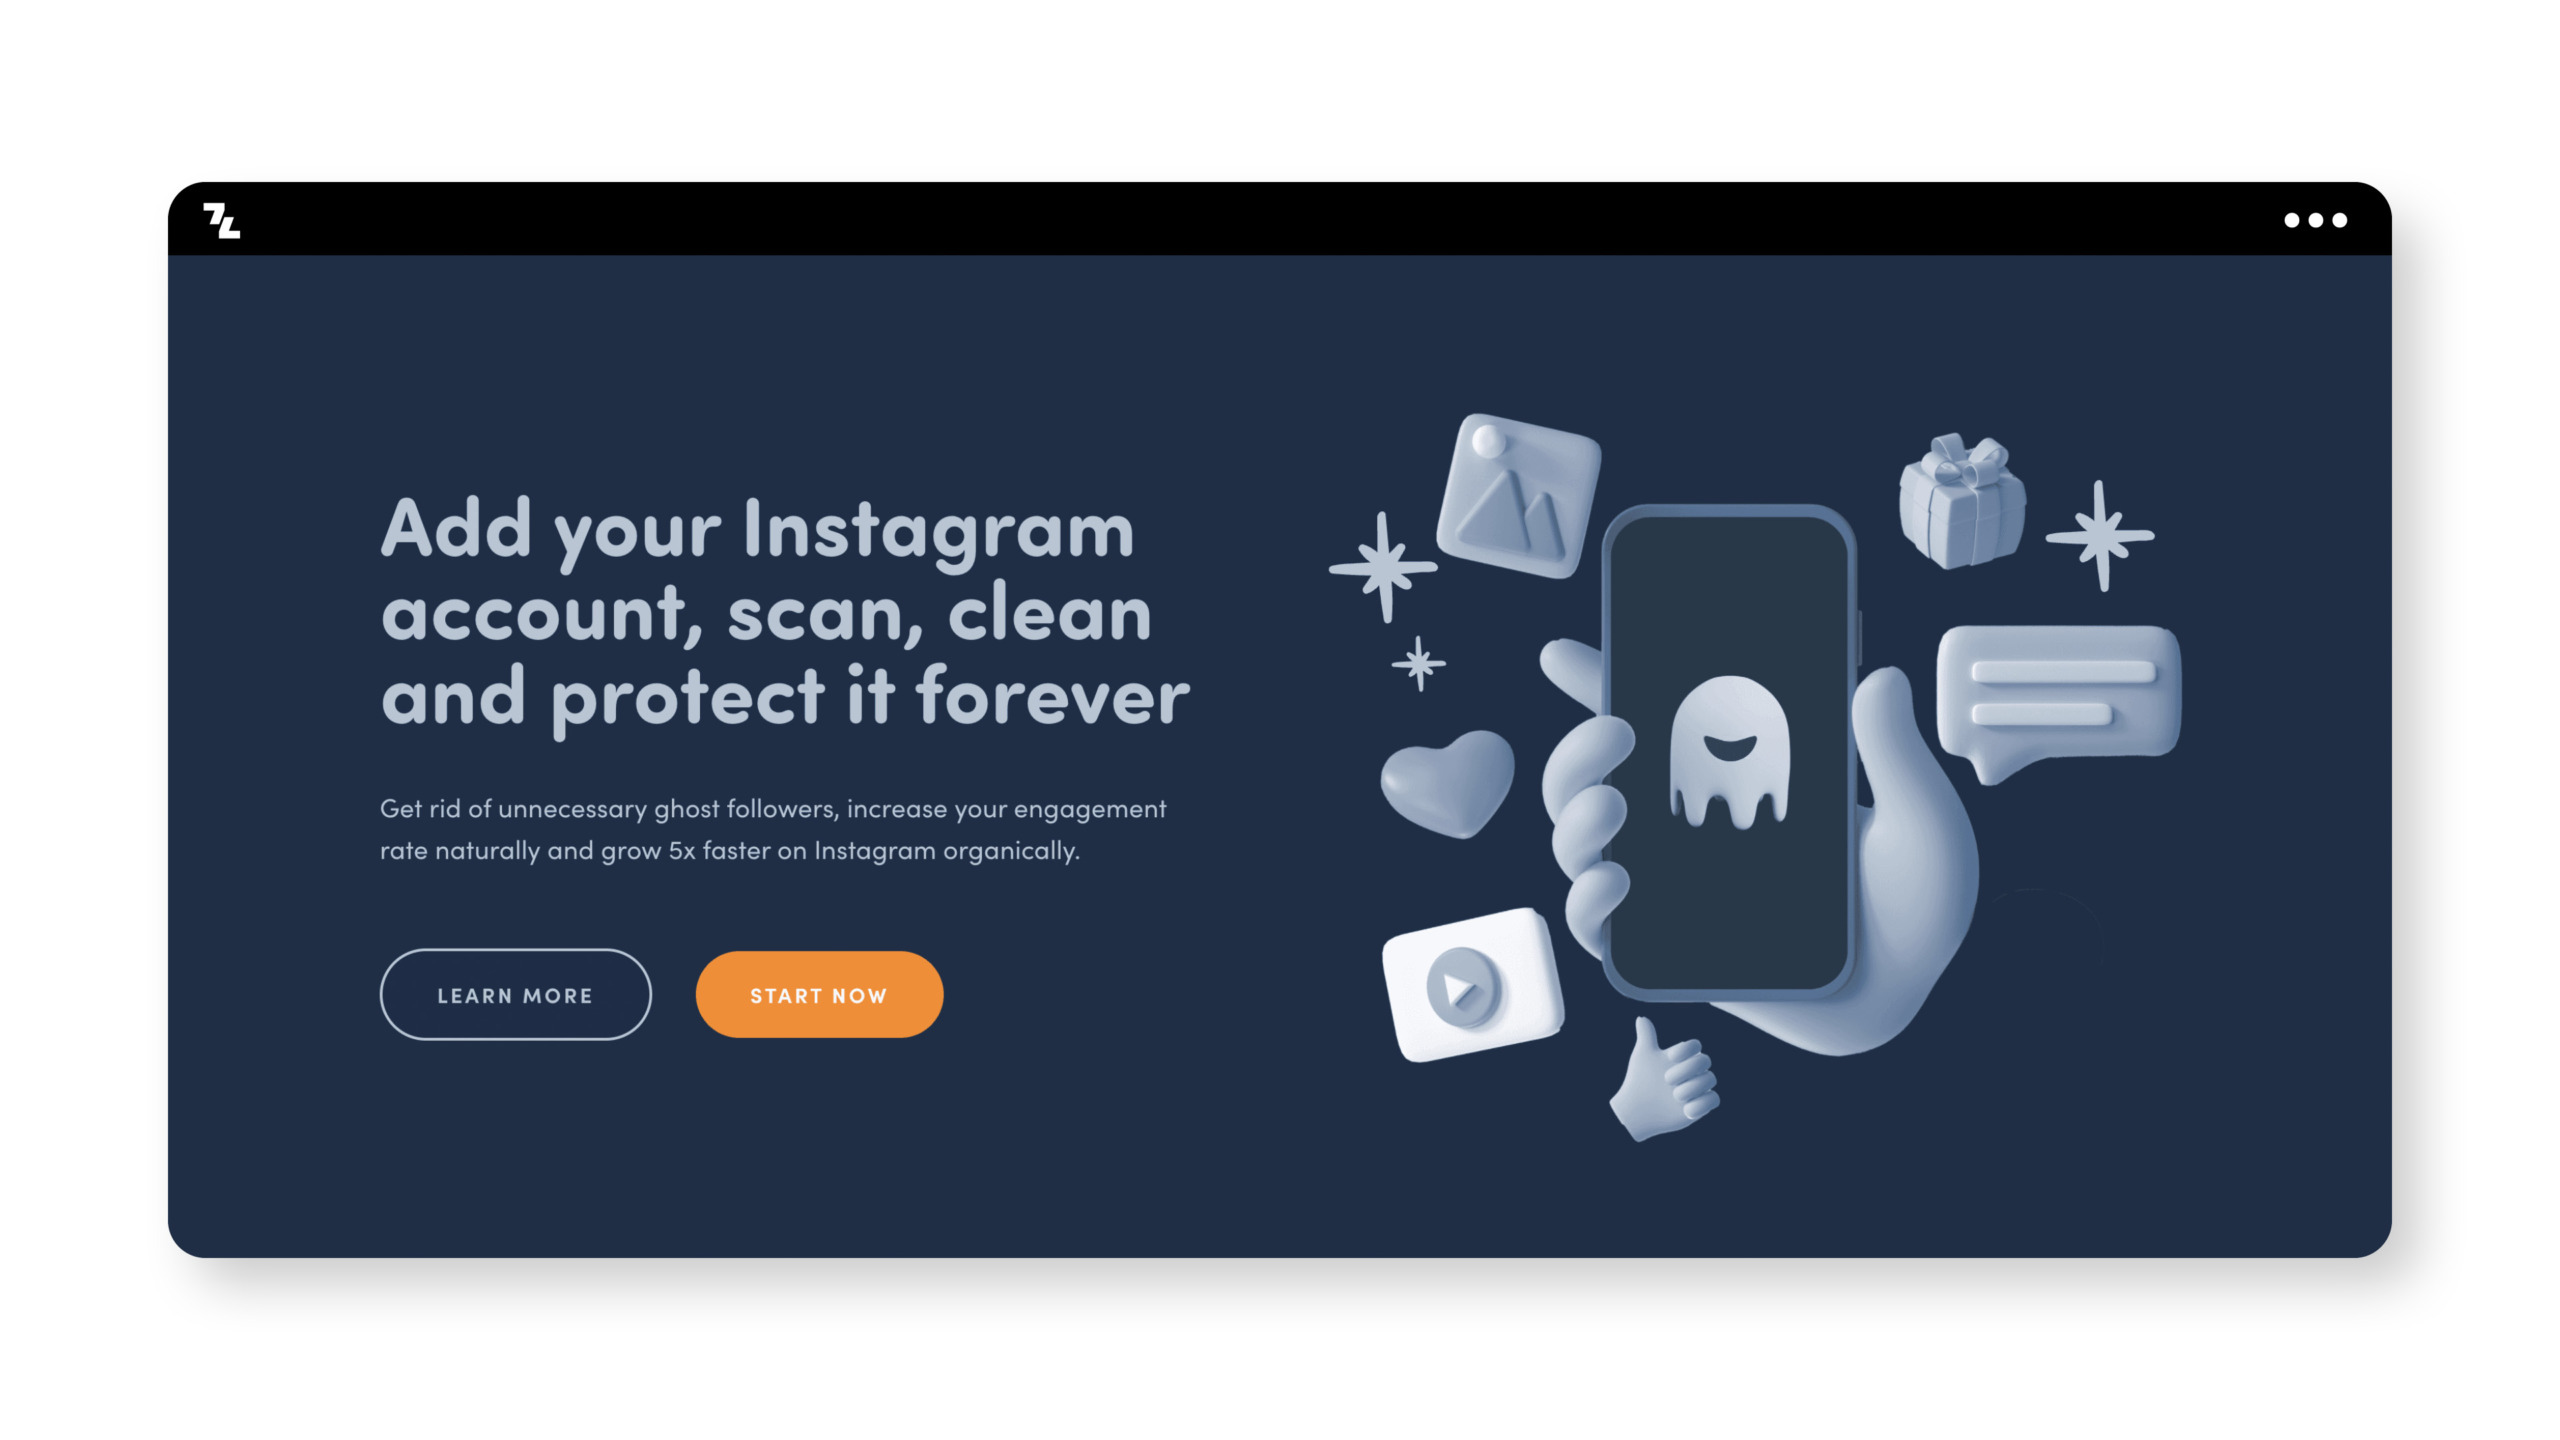 Schlüsselwörter: Instagram-Konto, schützen